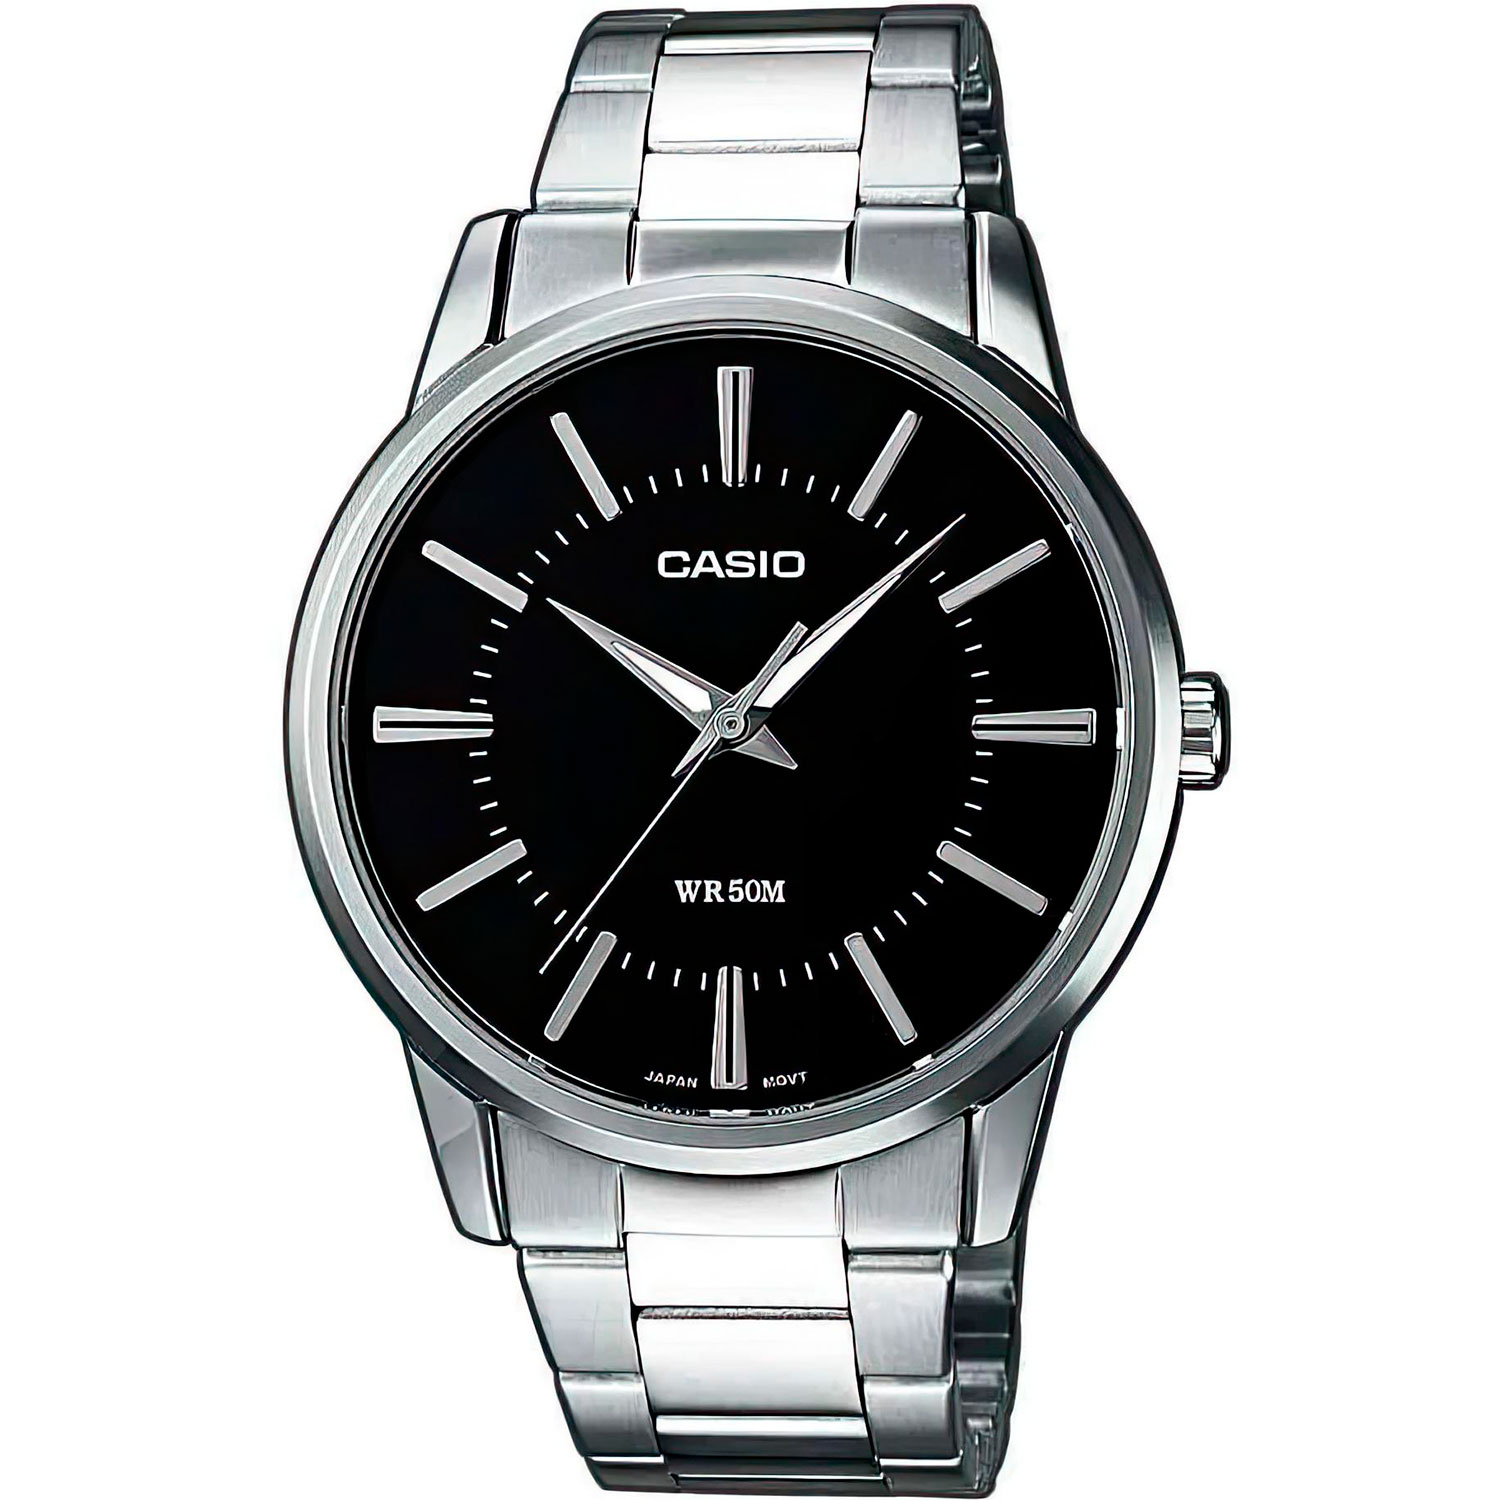 Часы Casio MTP-1303D-1A